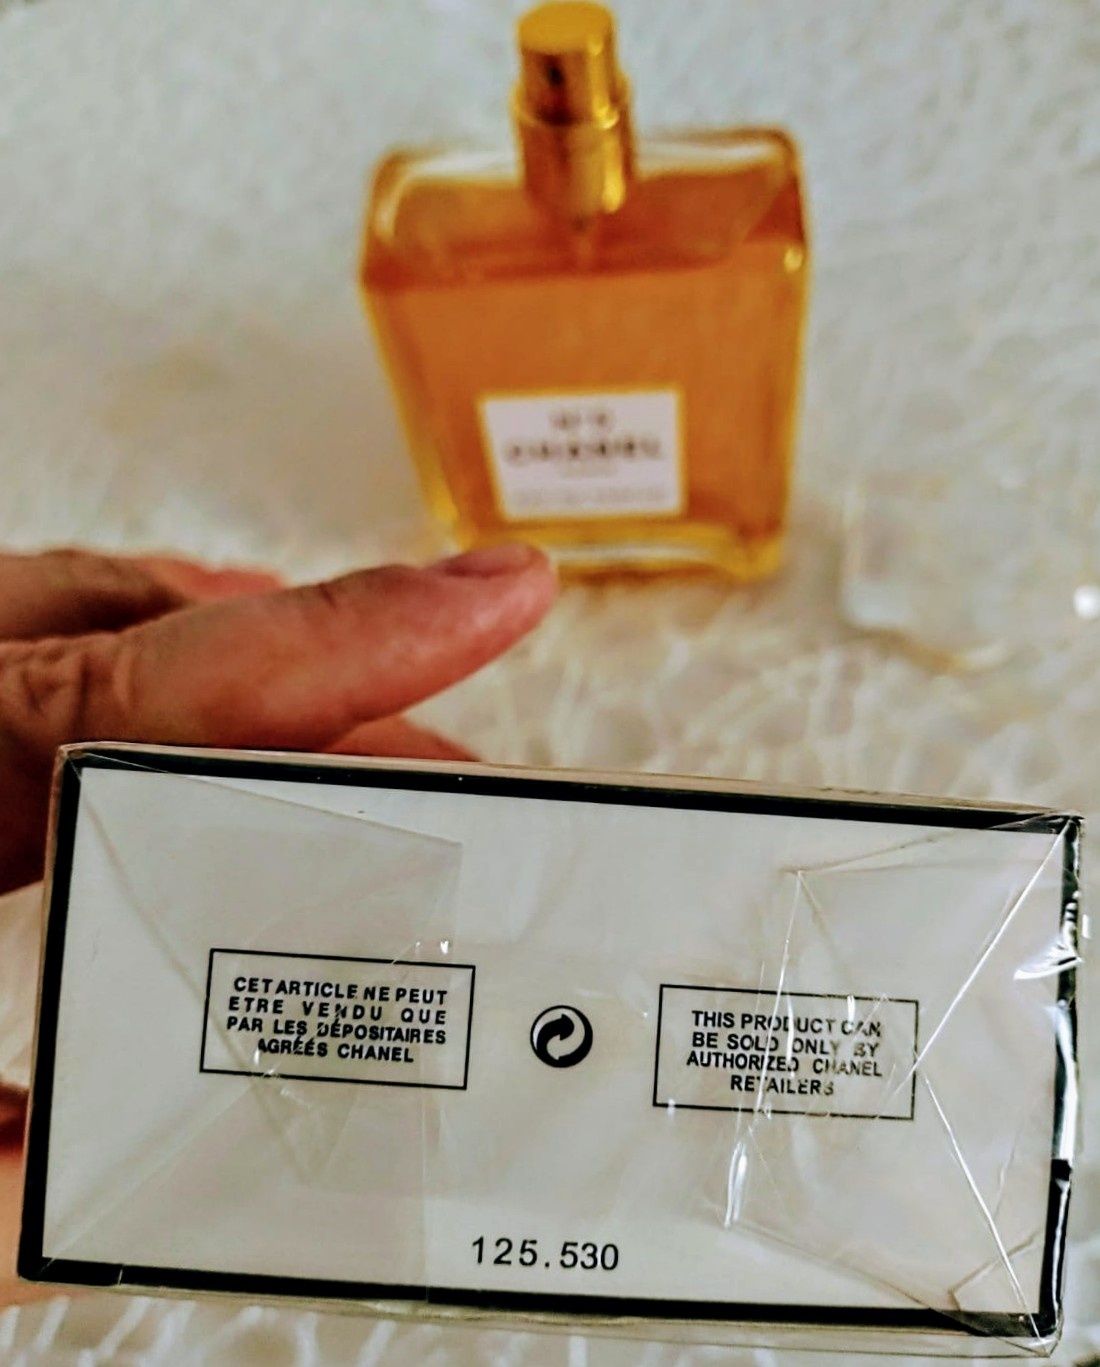 Parfum Femei Coco Chanel nr. 5